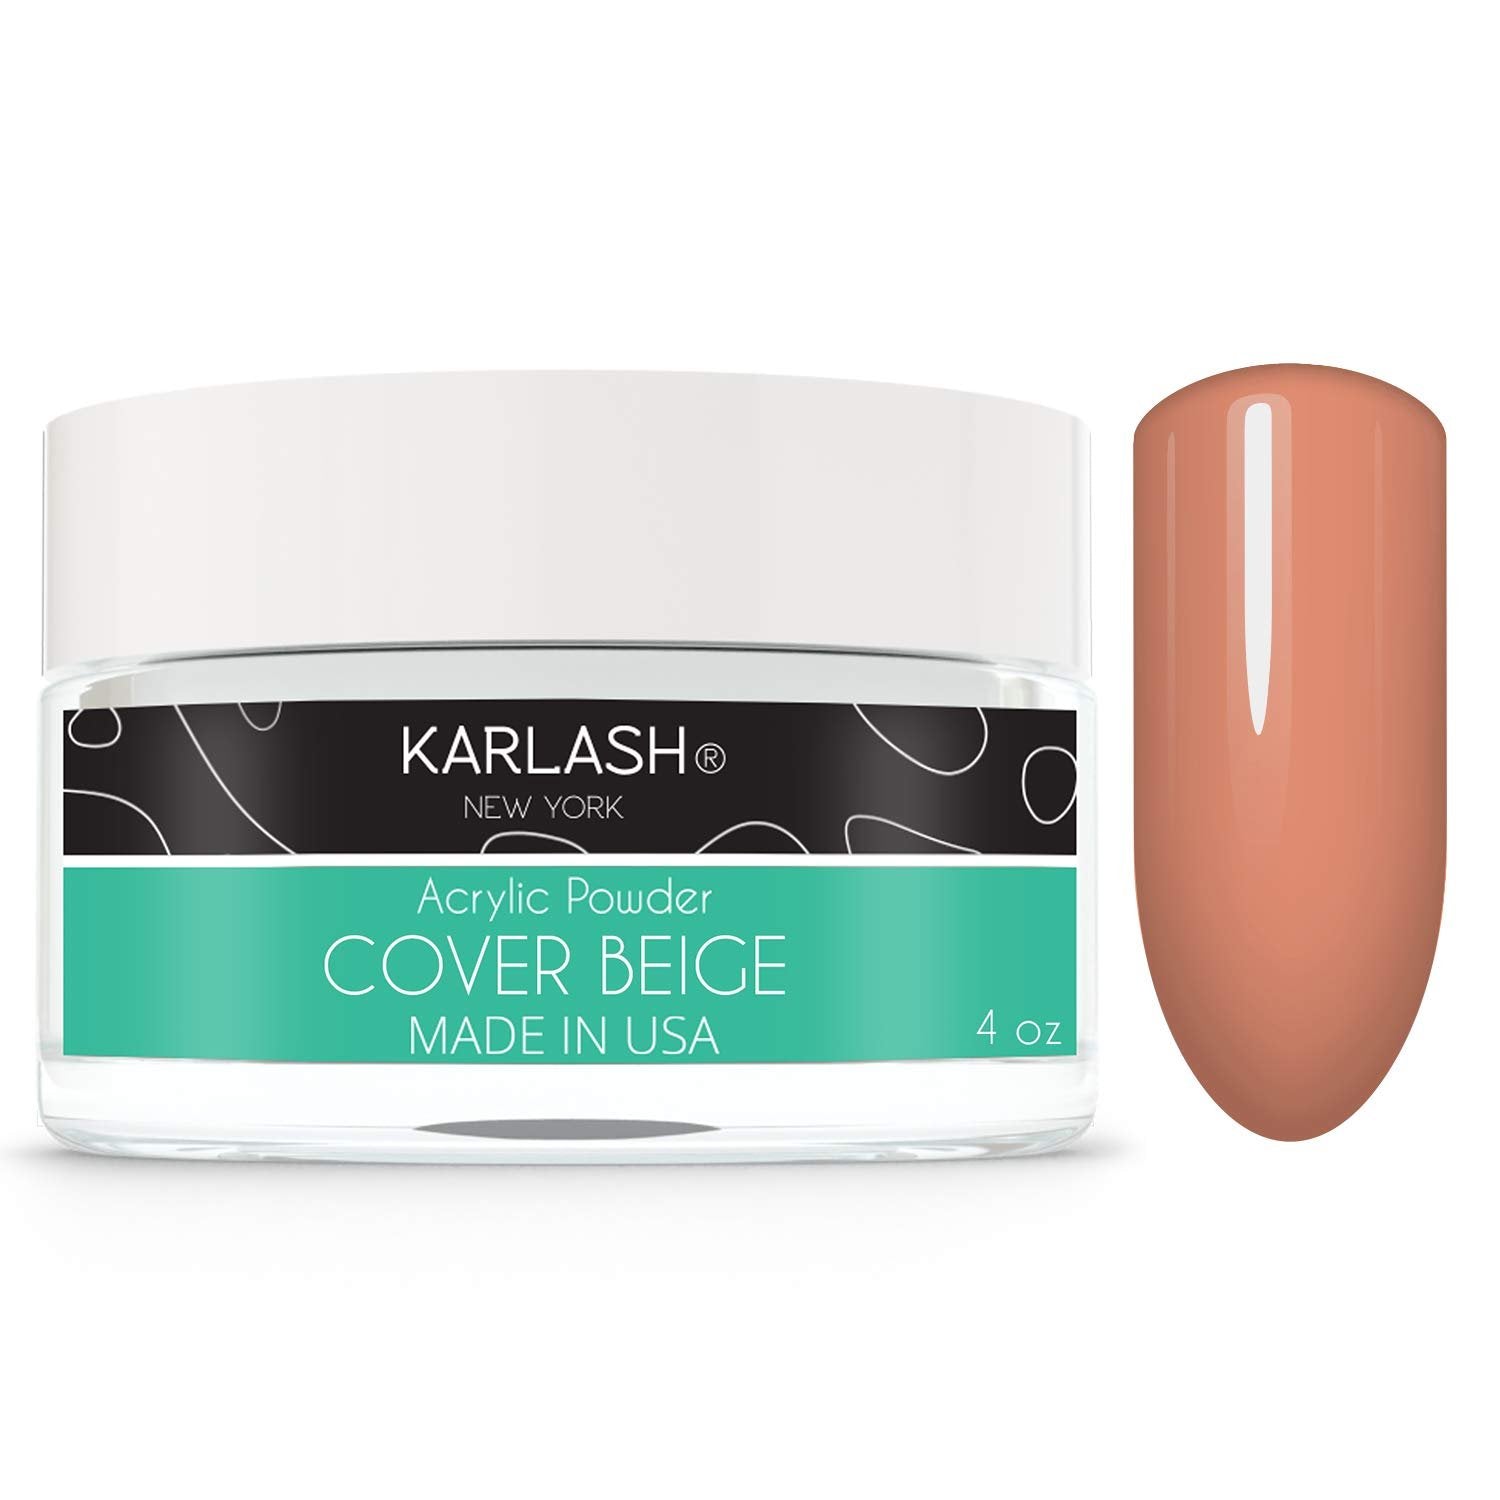 Karlash Professional Acrylic Powder Cover Beige 4 oz